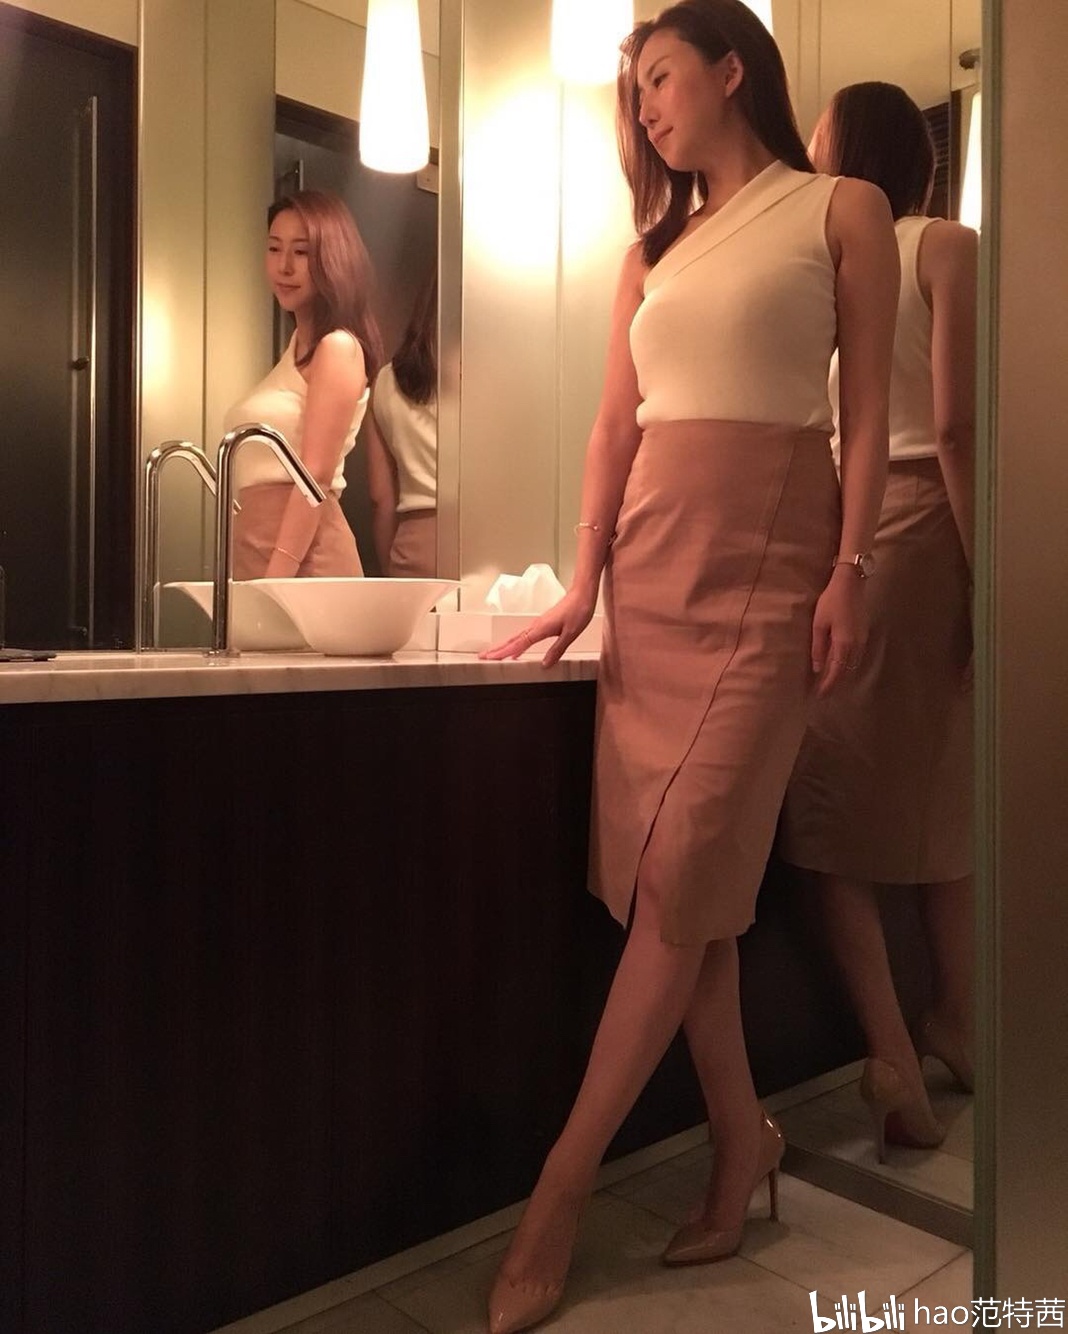 松下纱荣子的instagram速览